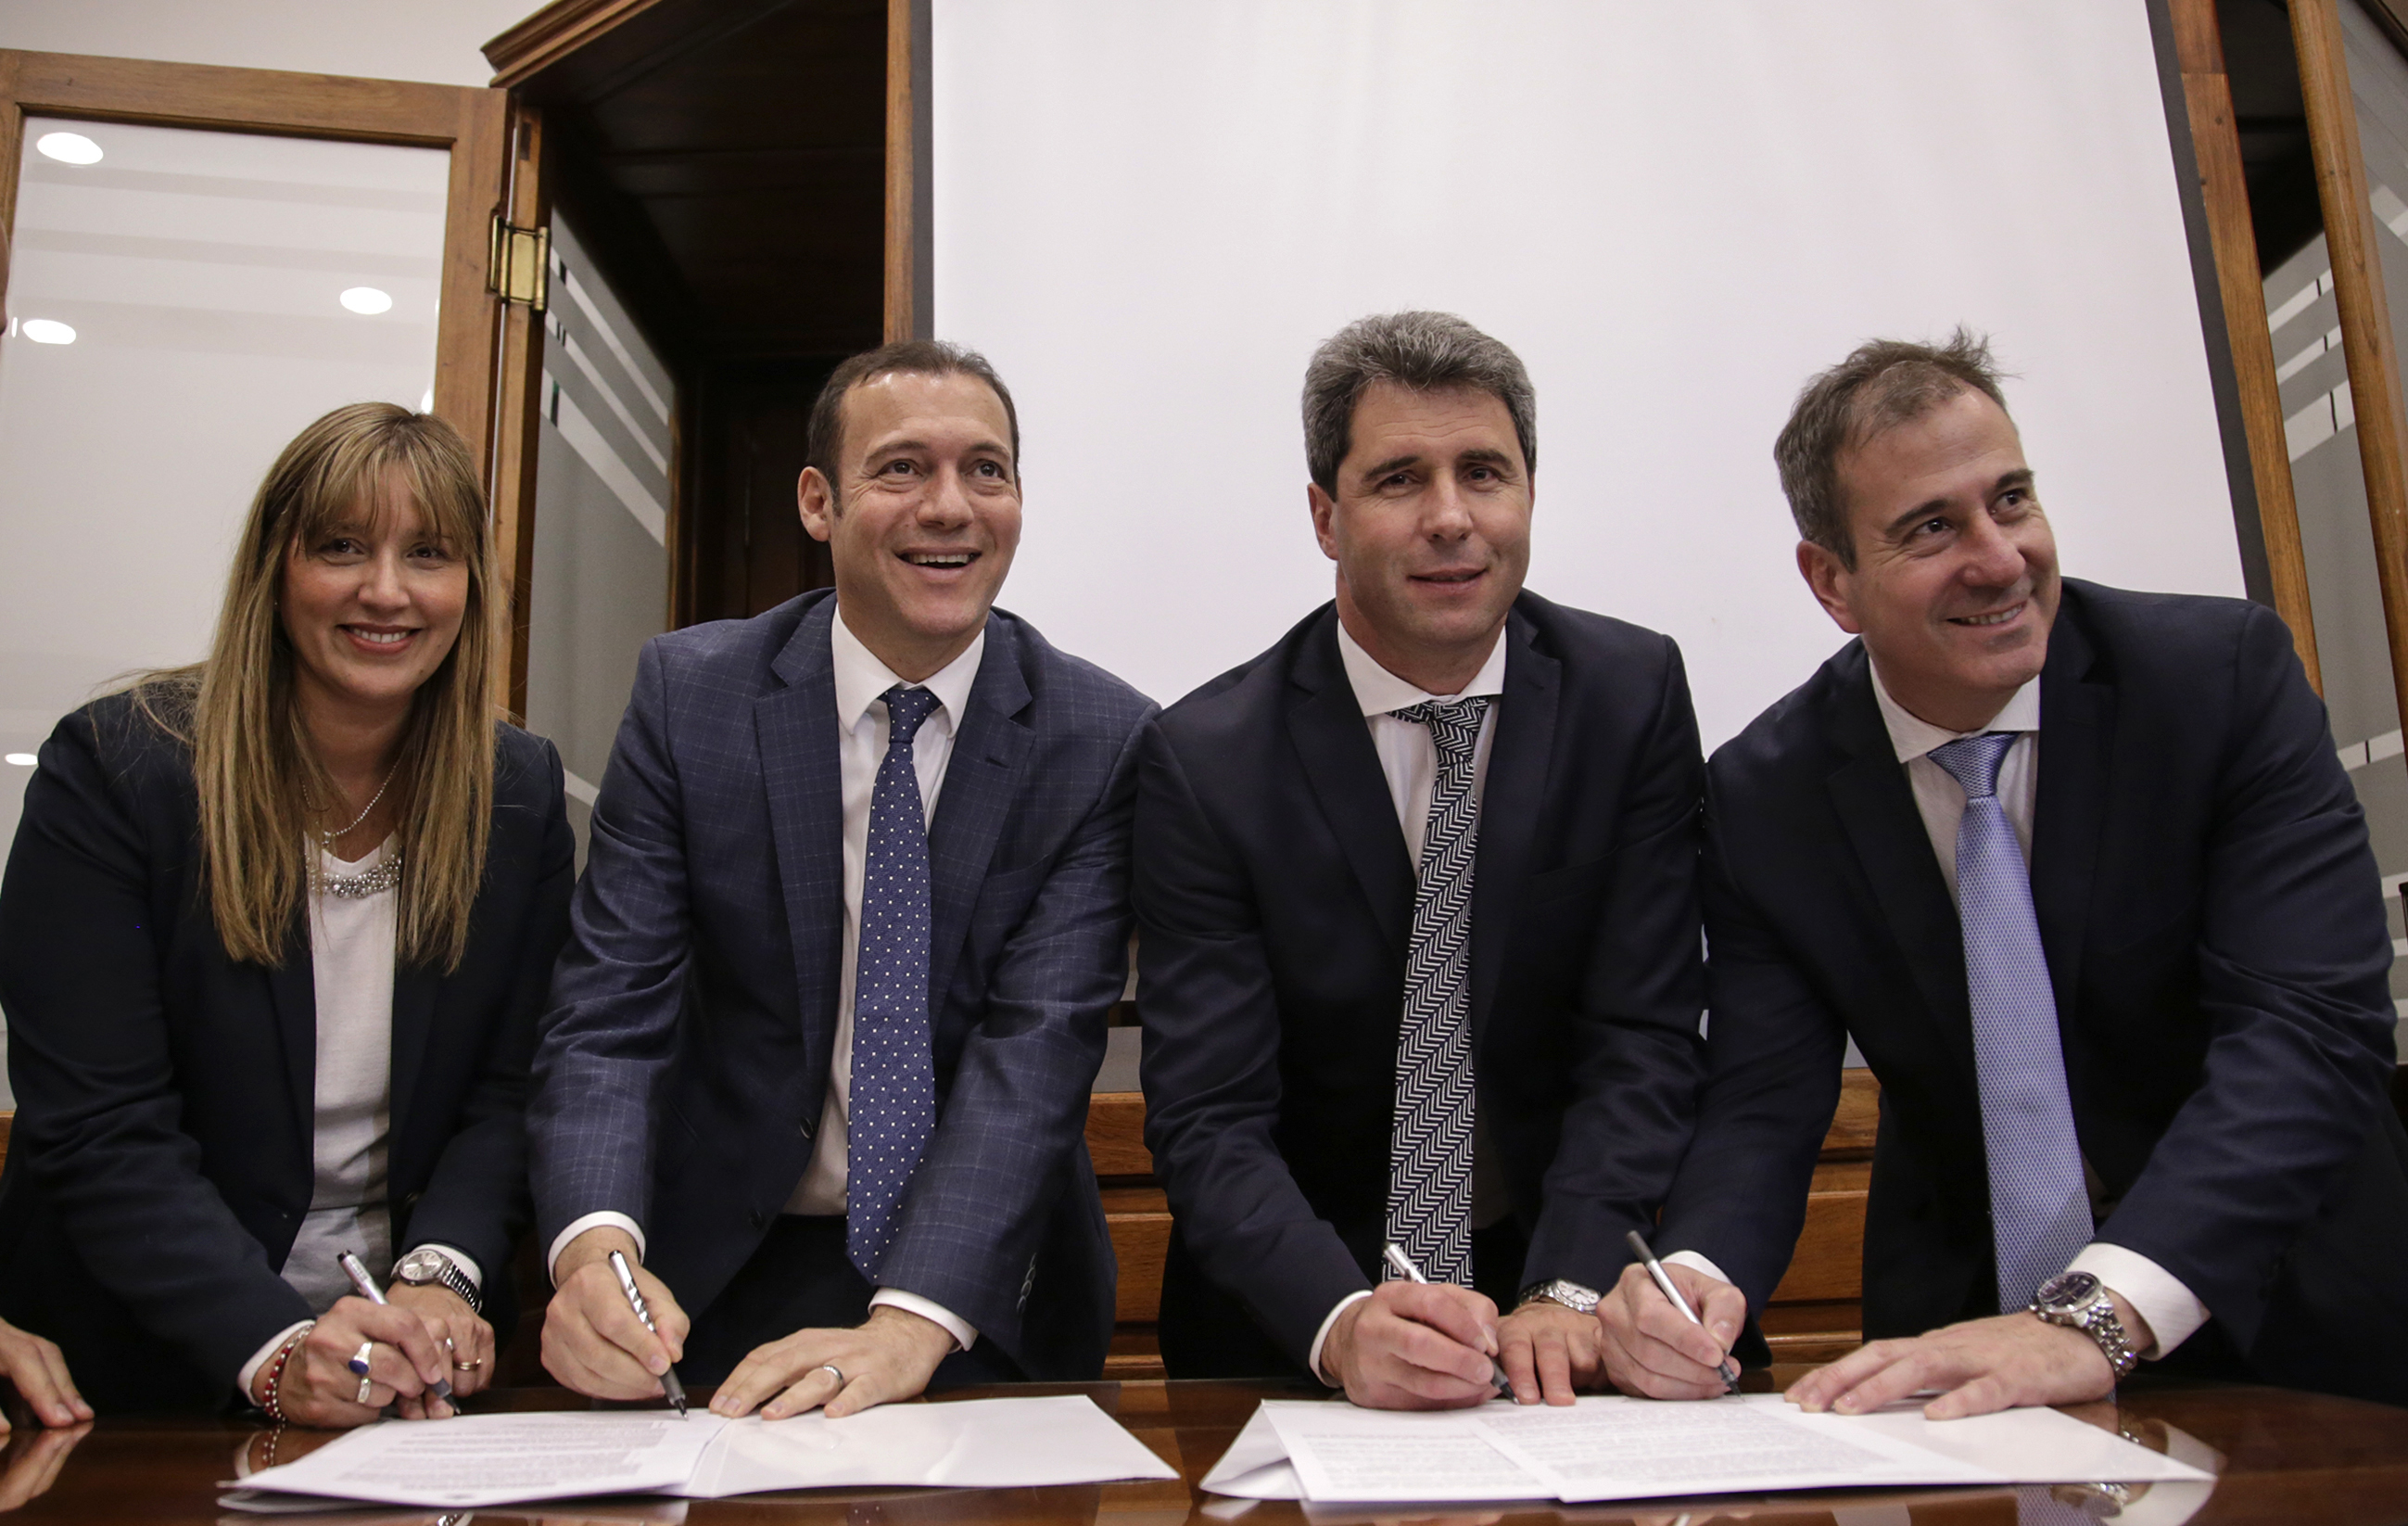 Gobernadores de Neuquén, Omar Gutiérrez, y de San Juan, Sergio Uñac, firmaron un acuerdo marco de cooperación mutua para la incorporación de innovación tecnológica en salud pública